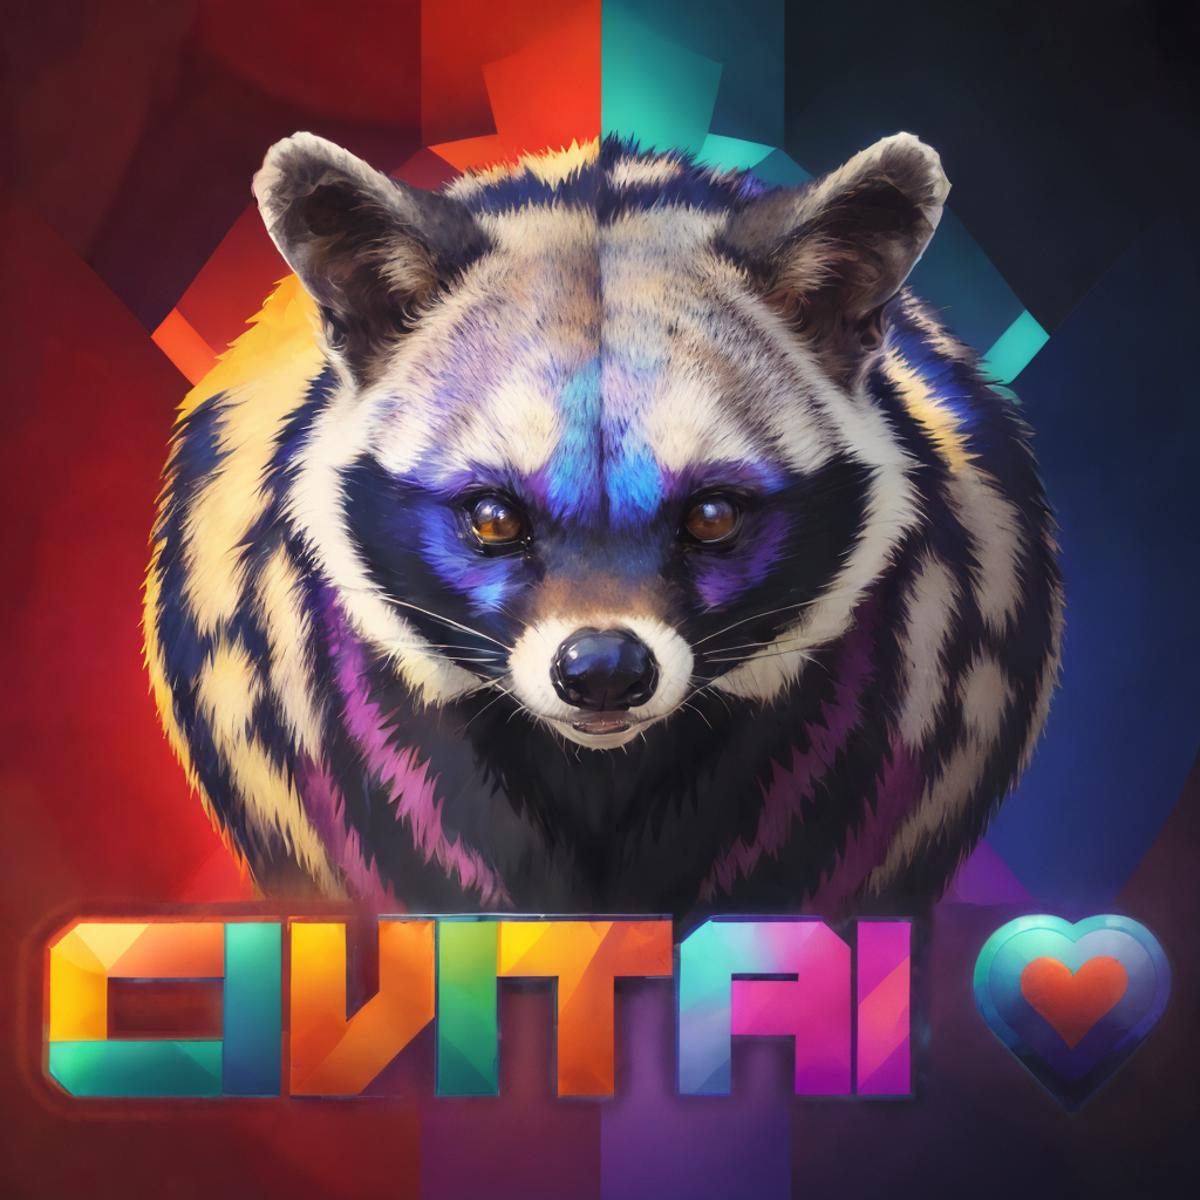 CivitAI Mascot / Logo generator (Civet) image by getphat